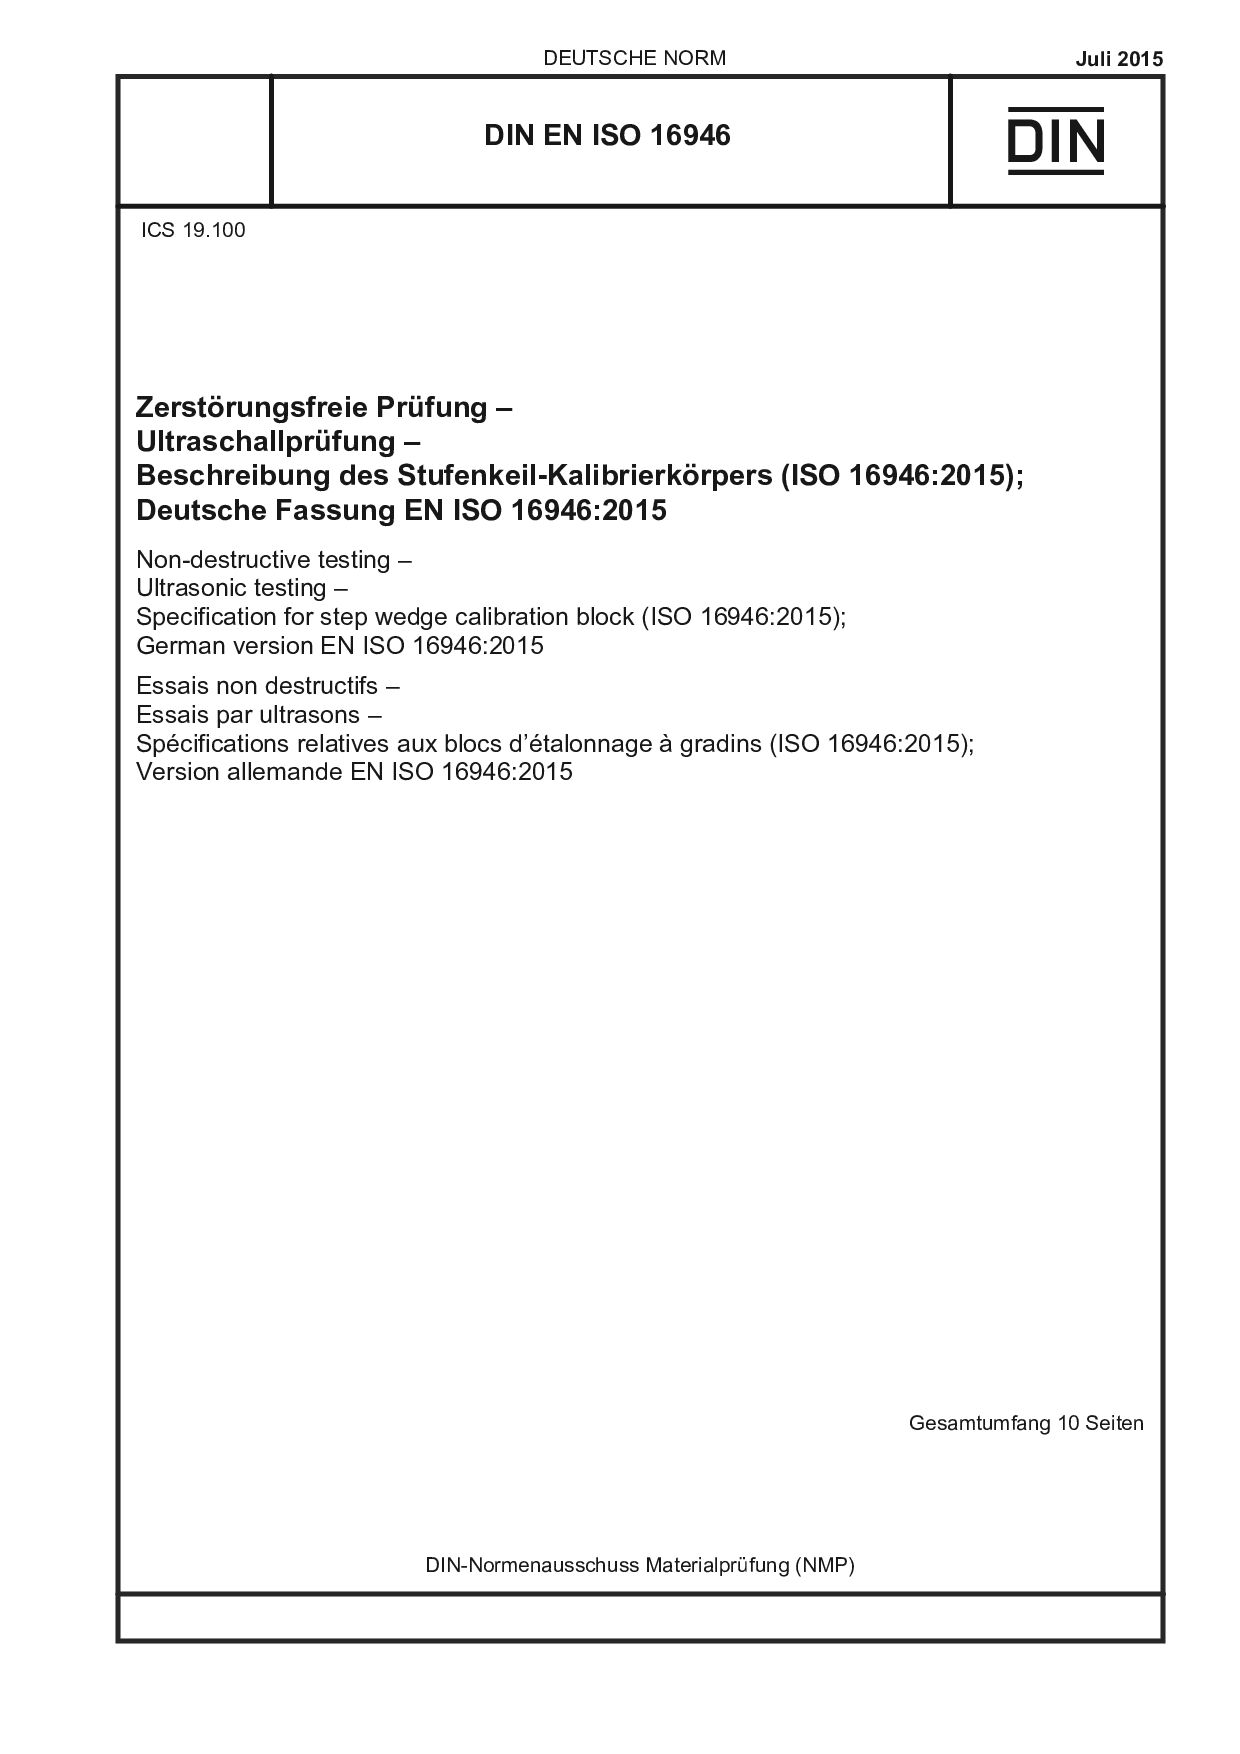 DIN EN ISO 16946:2015封面图